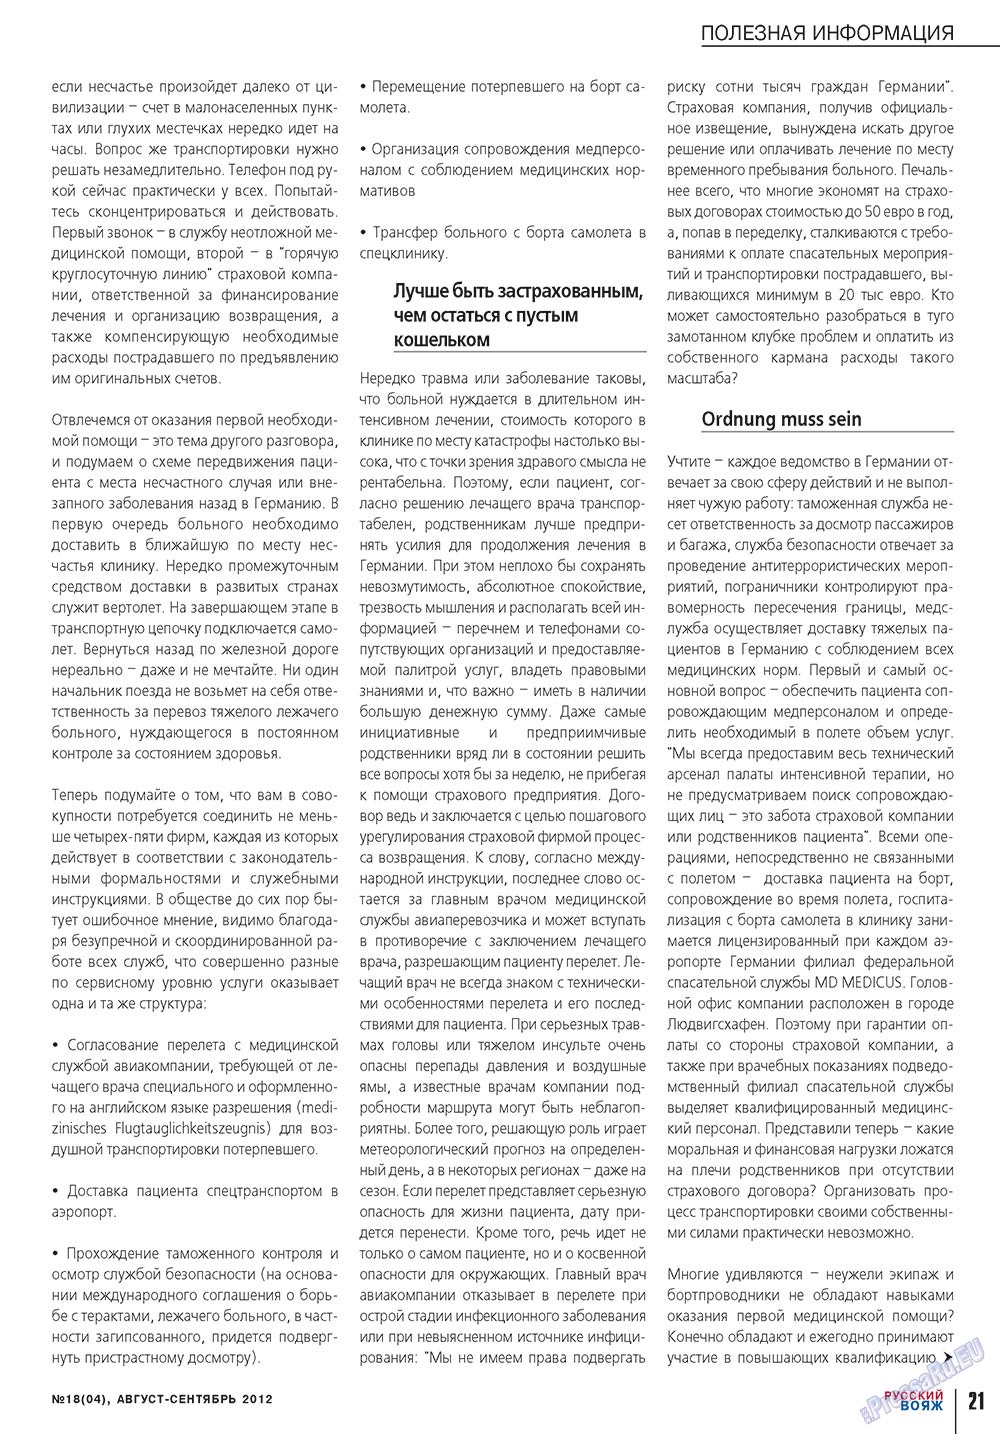 Русский вояж (журнал). 2012 год, номер 18, стр. 21